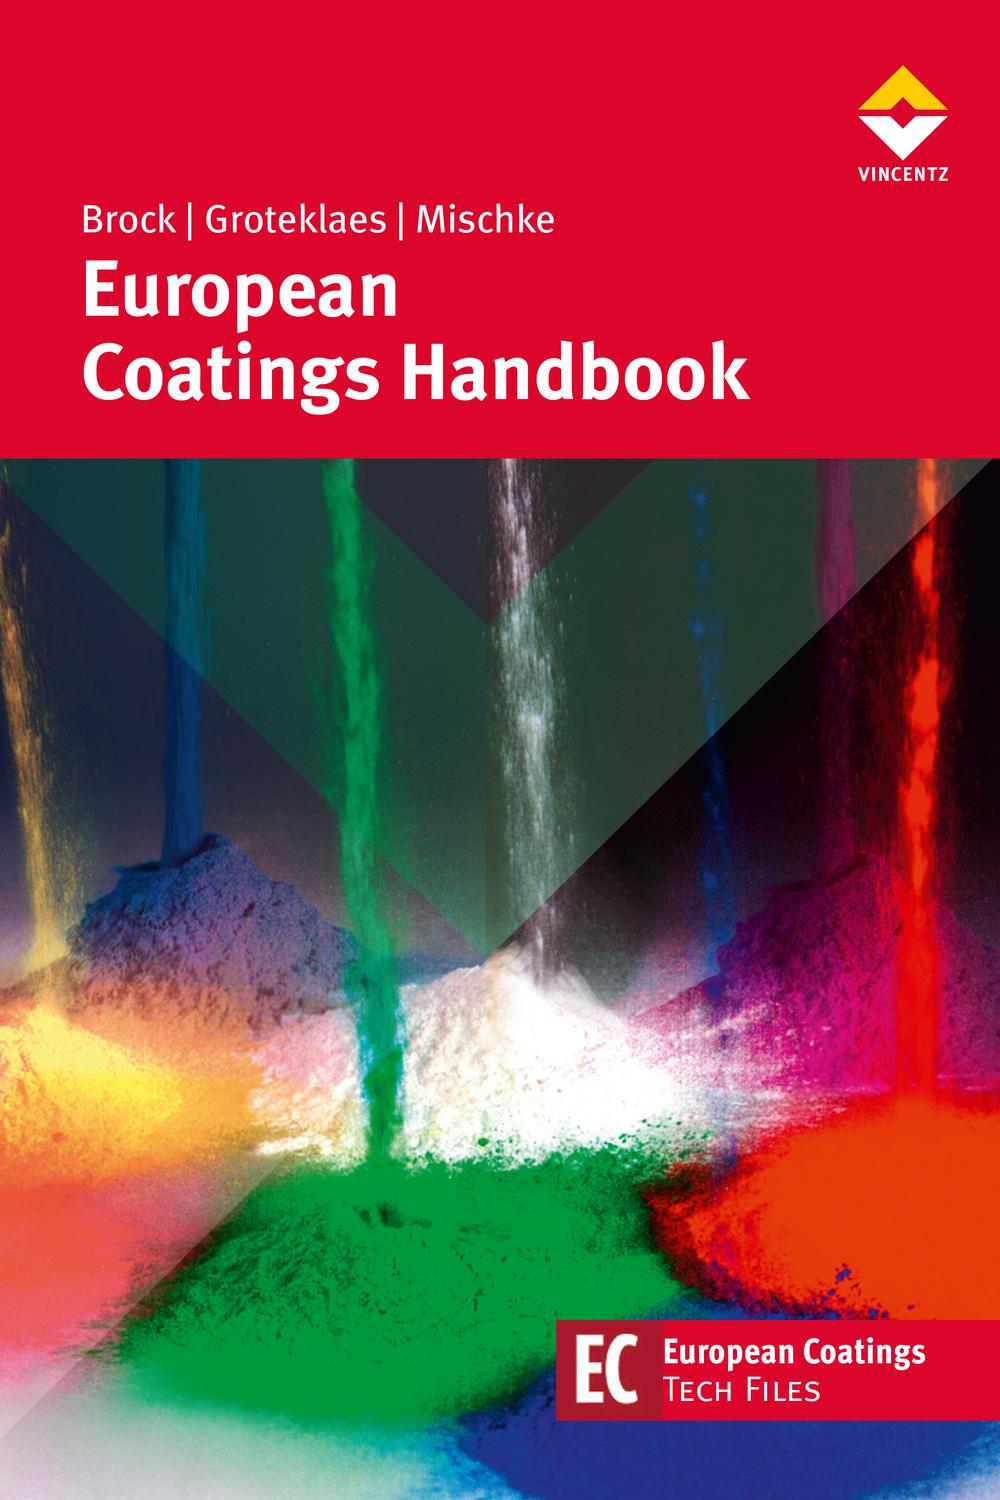 European Coatings Handbook - Thomas Brock, Michael Groteklaes, Peter Mischke,,